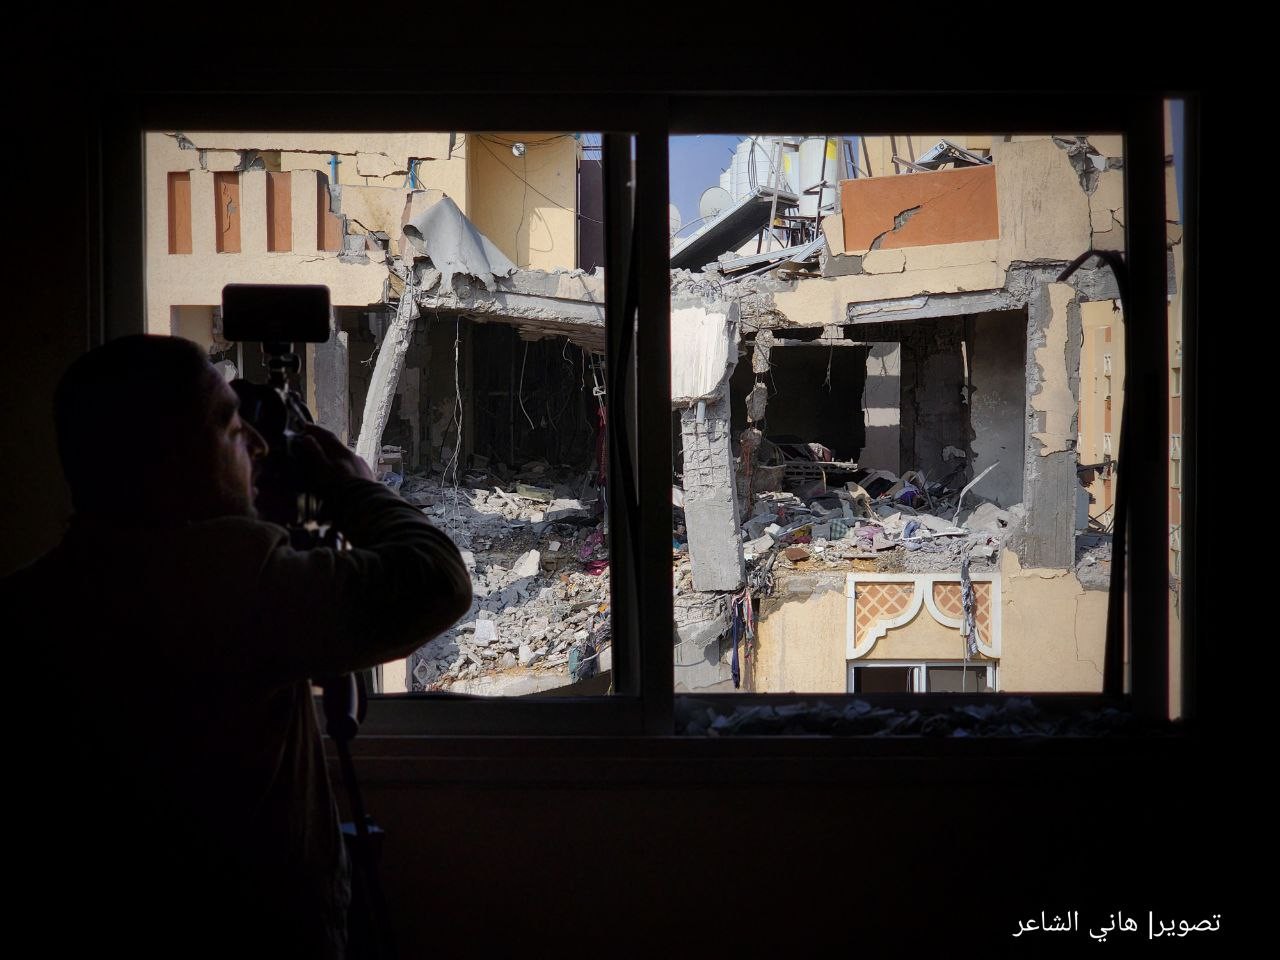 دمار كبير يخلفه القصف الإسرائيلي على شقة سكنية في مدينة حمد القطرية بخانيونس 21.jpg